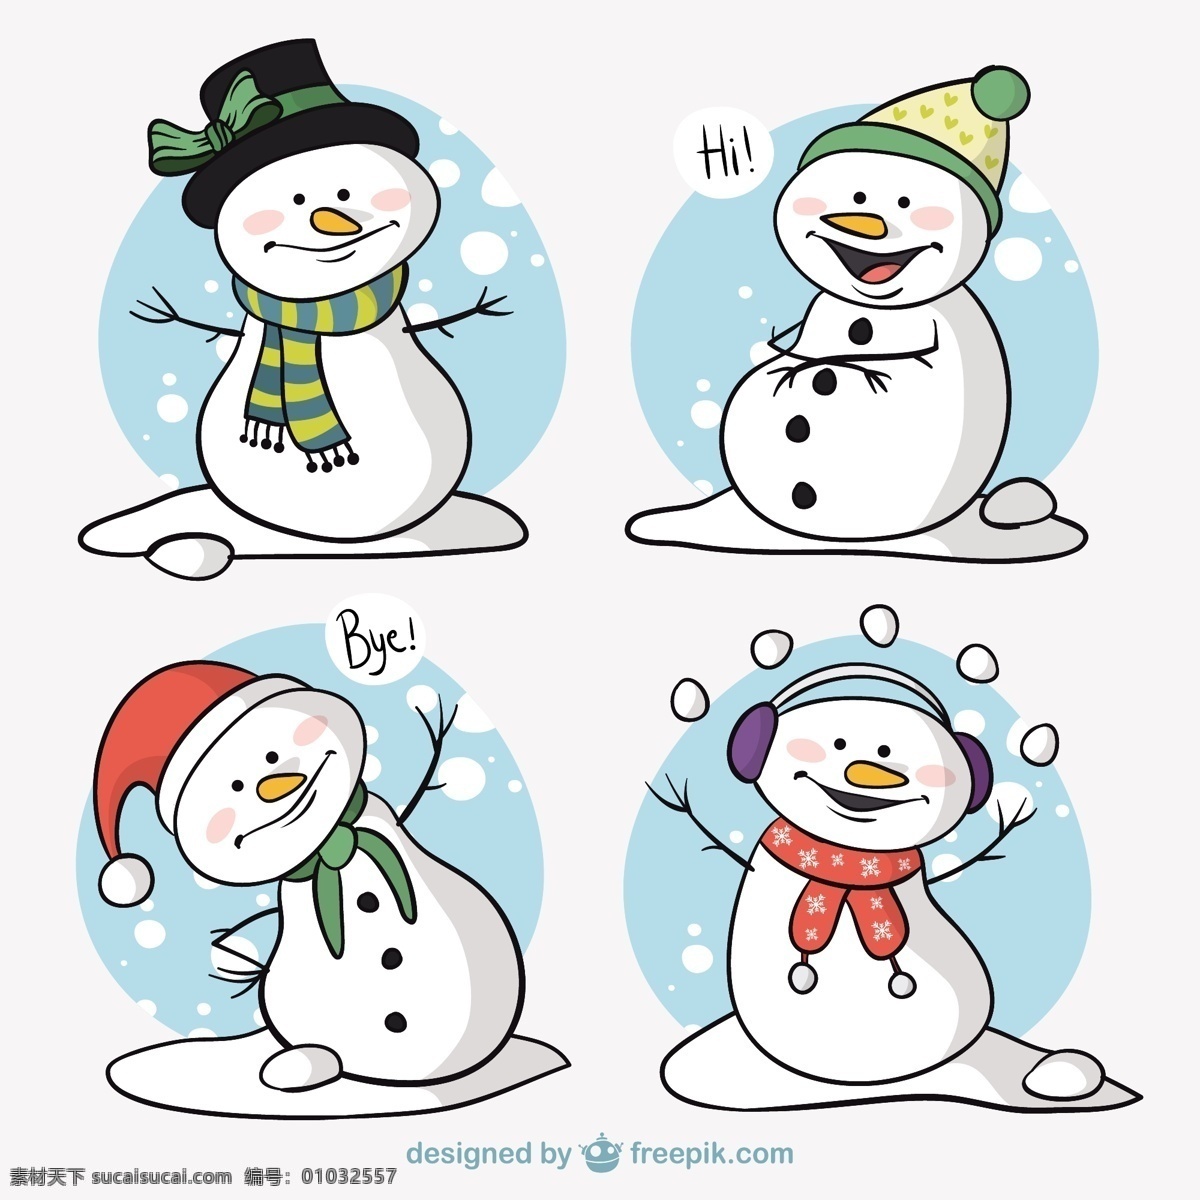 堆雪人的角色 圣诞节 雪 圣诞快乐 冬天 快乐 性格 庆祝的节日 堆雪人 节日快乐 人物 包 季节 节日 十二月 白色